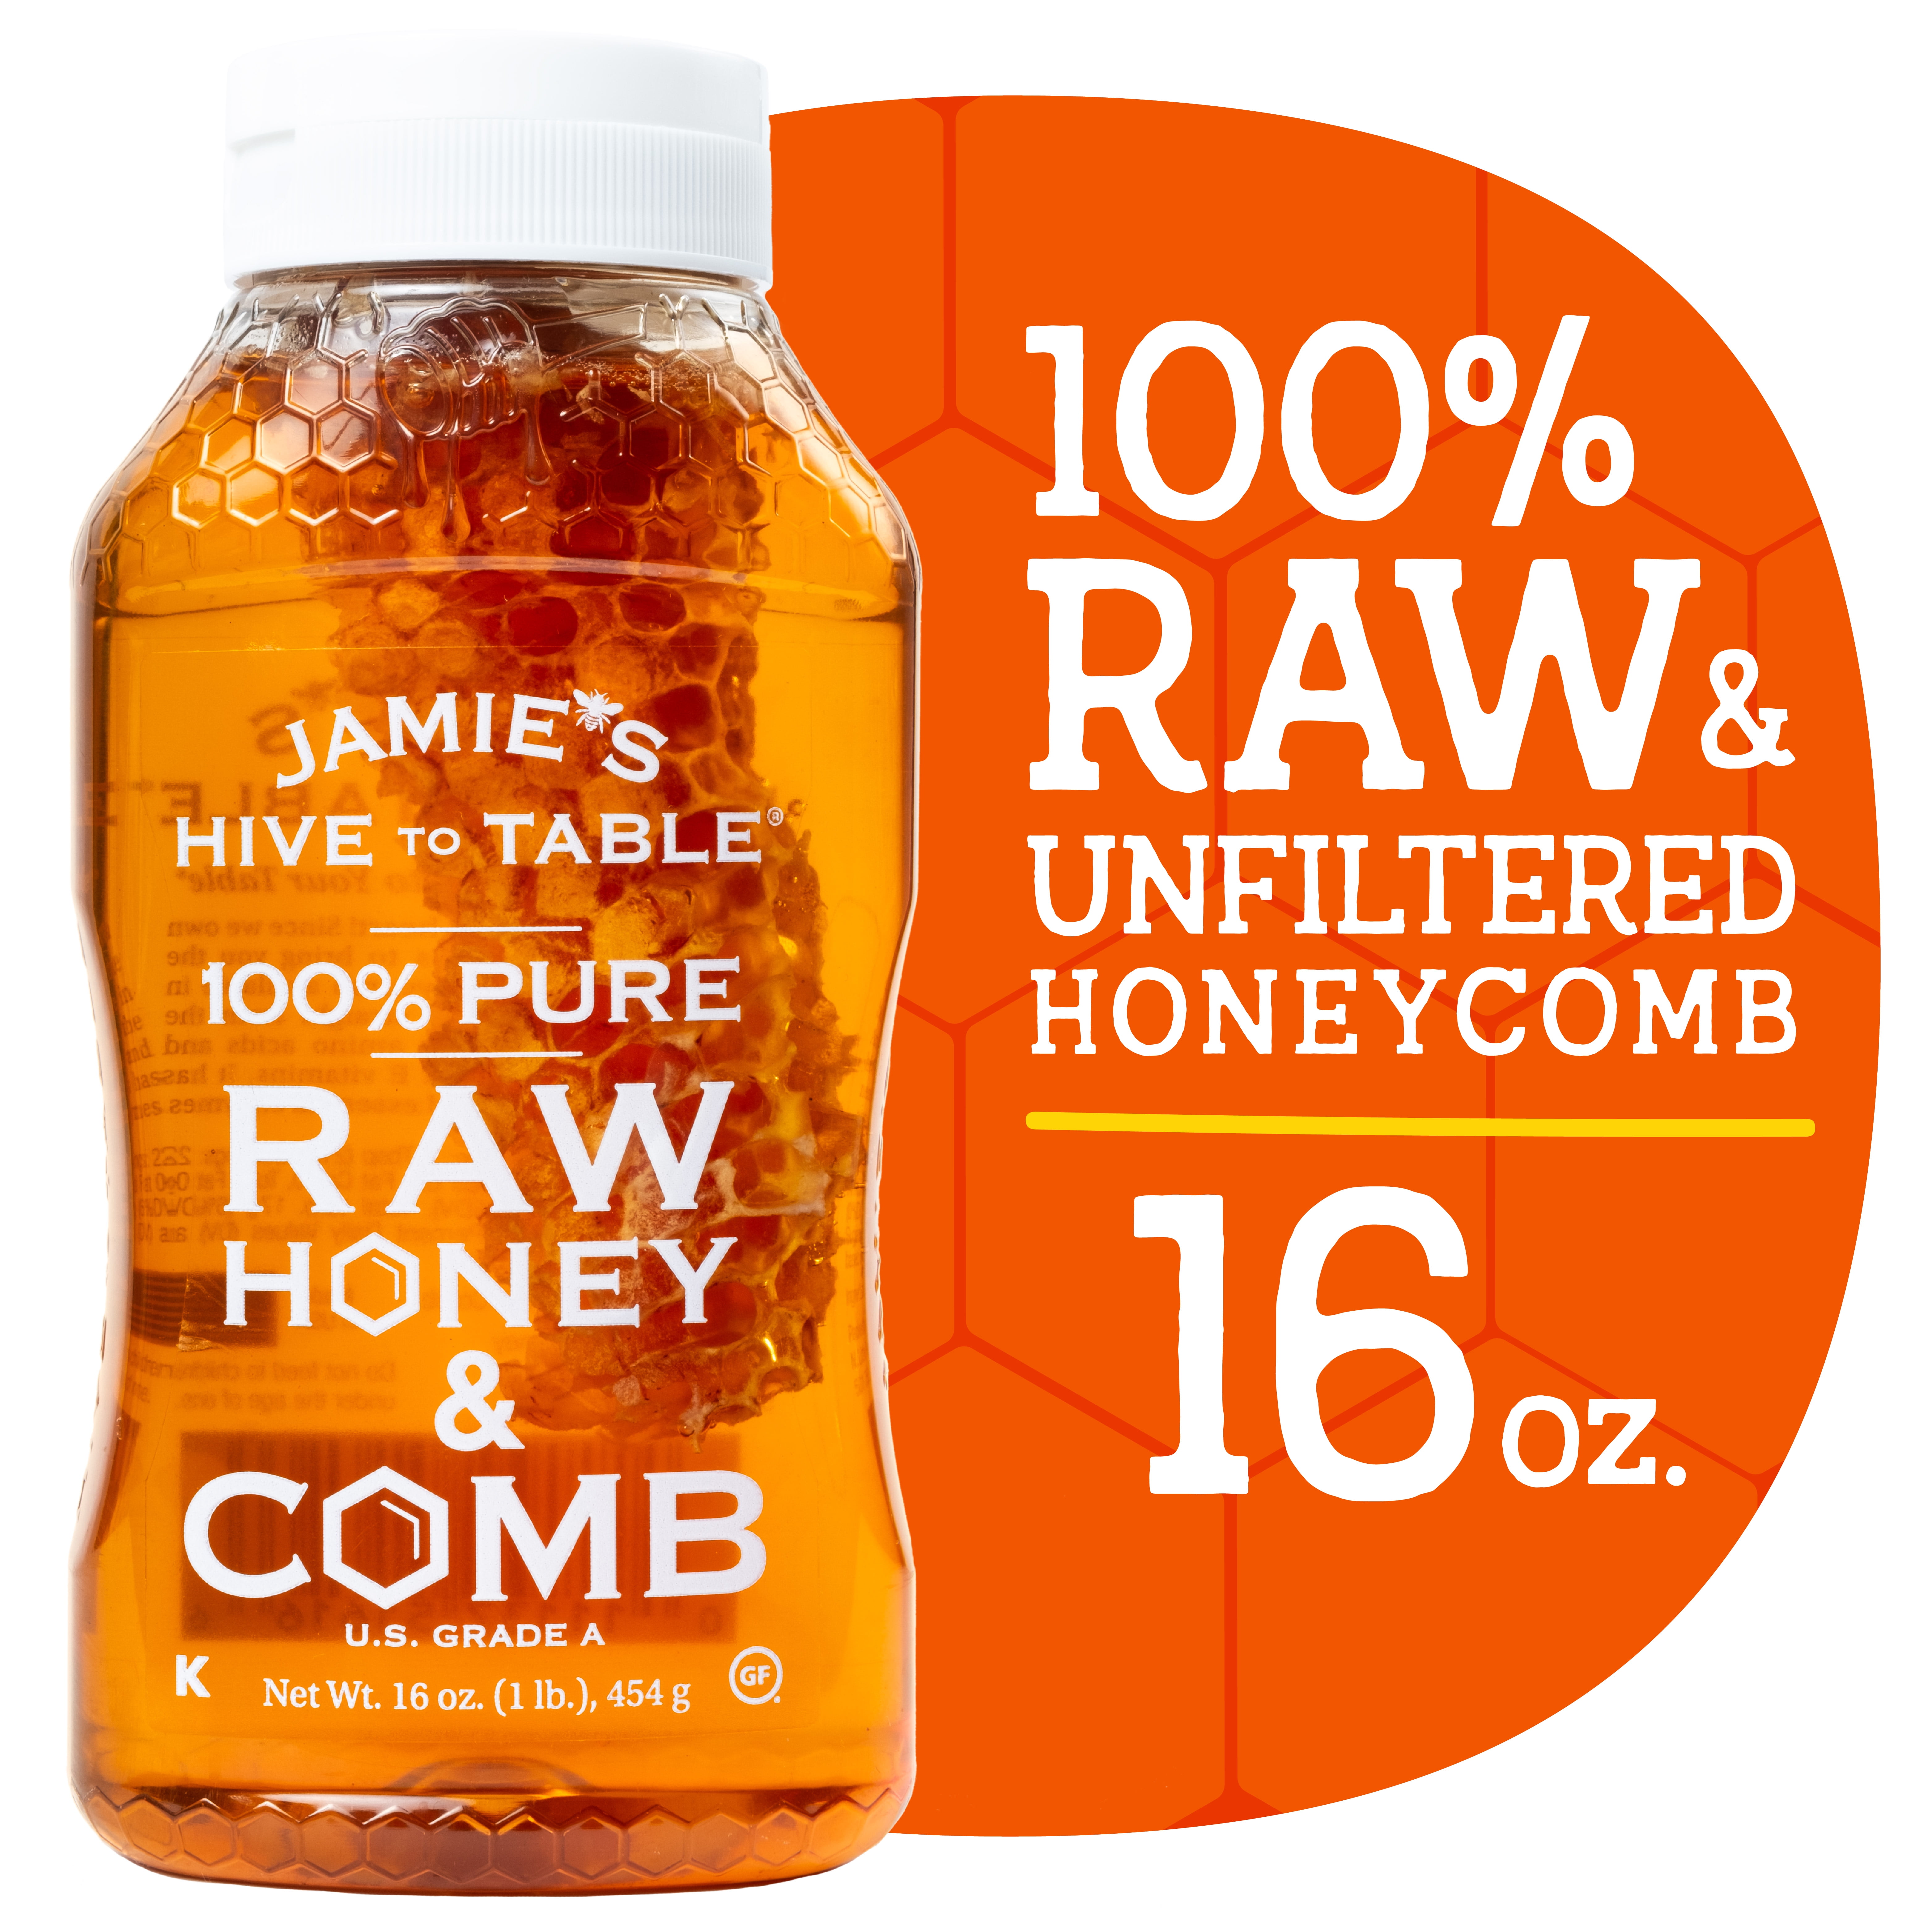 4 oz. RAW HONEY COMB - Jamie's Hive to Table